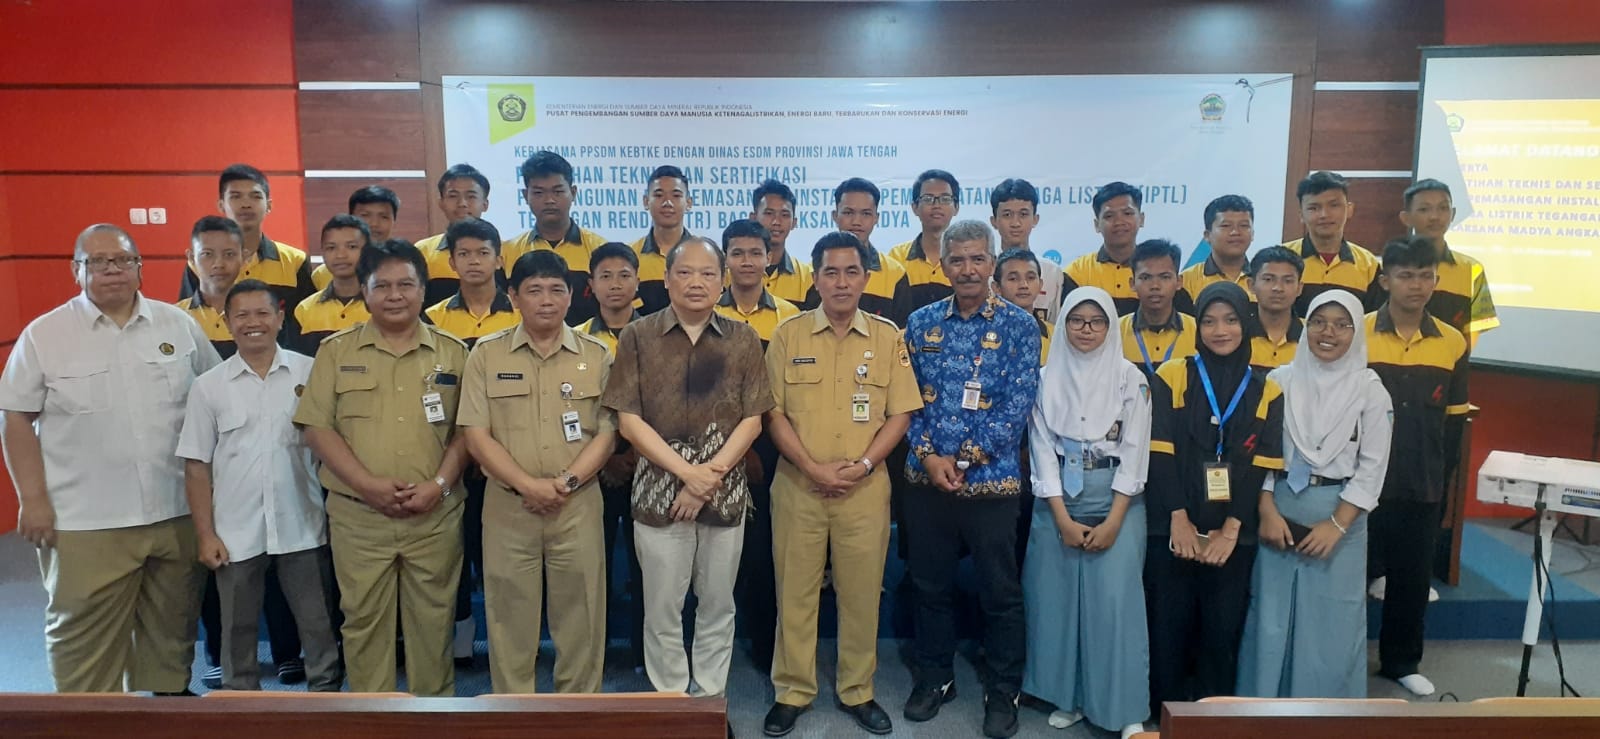 Pelatihan dan Sertifikasi Tenaga Teknik Ketenagalistrikan di Provinsi Jawa Tengah Untuk Meningkatkan Kompetensi Siswa Siswi SMK